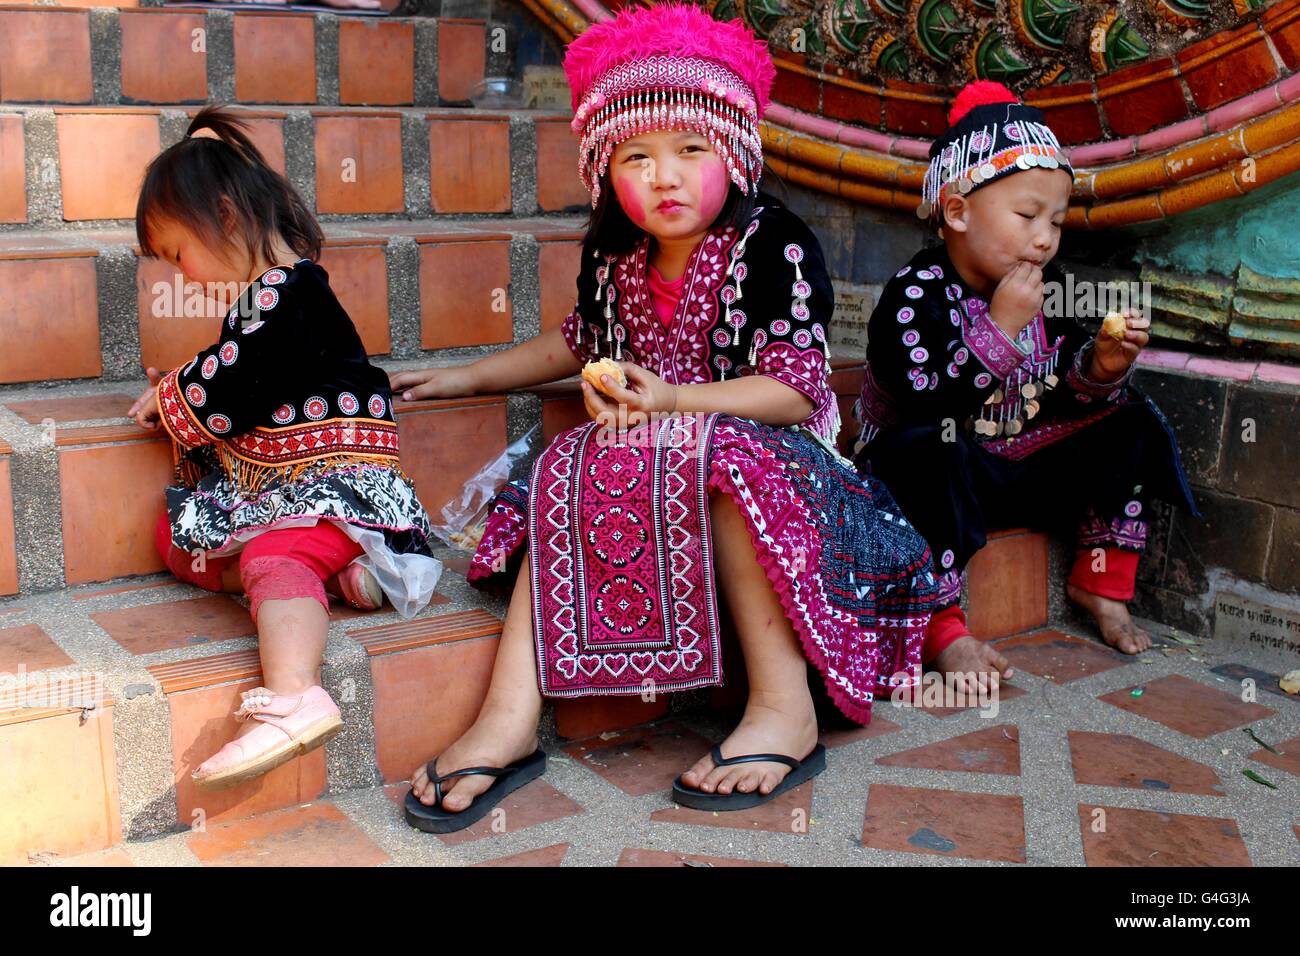 Bambini tailandesi immagini e fotografie stock ad alta risoluzione - Alamy